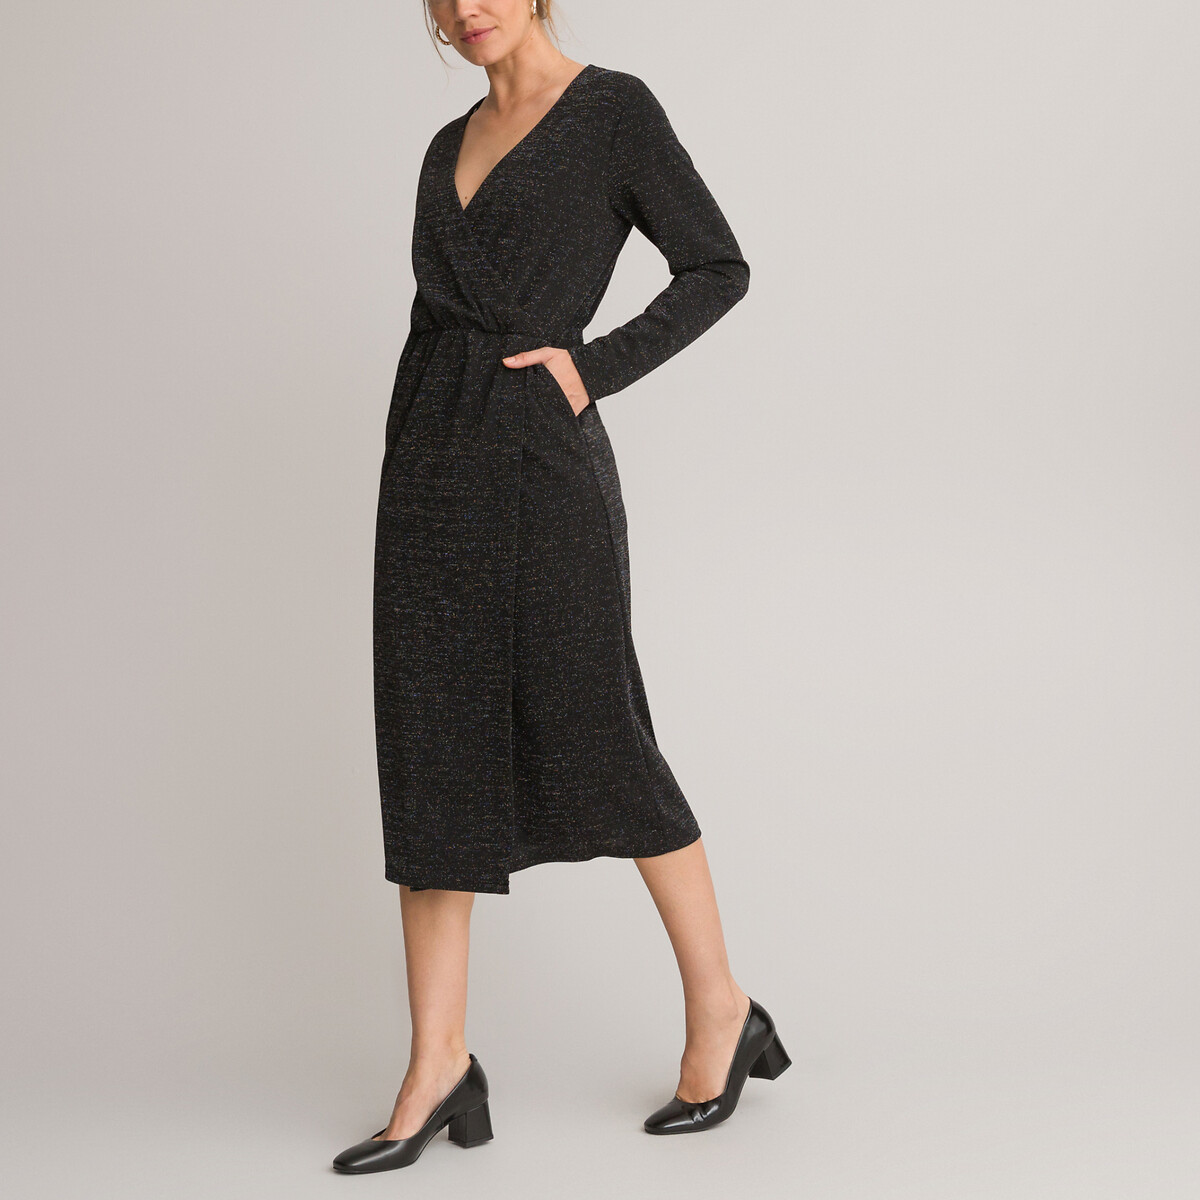 Платье-миди С запахом длинные рукава 54 черный LaRedoute, размер 54 - фото 1